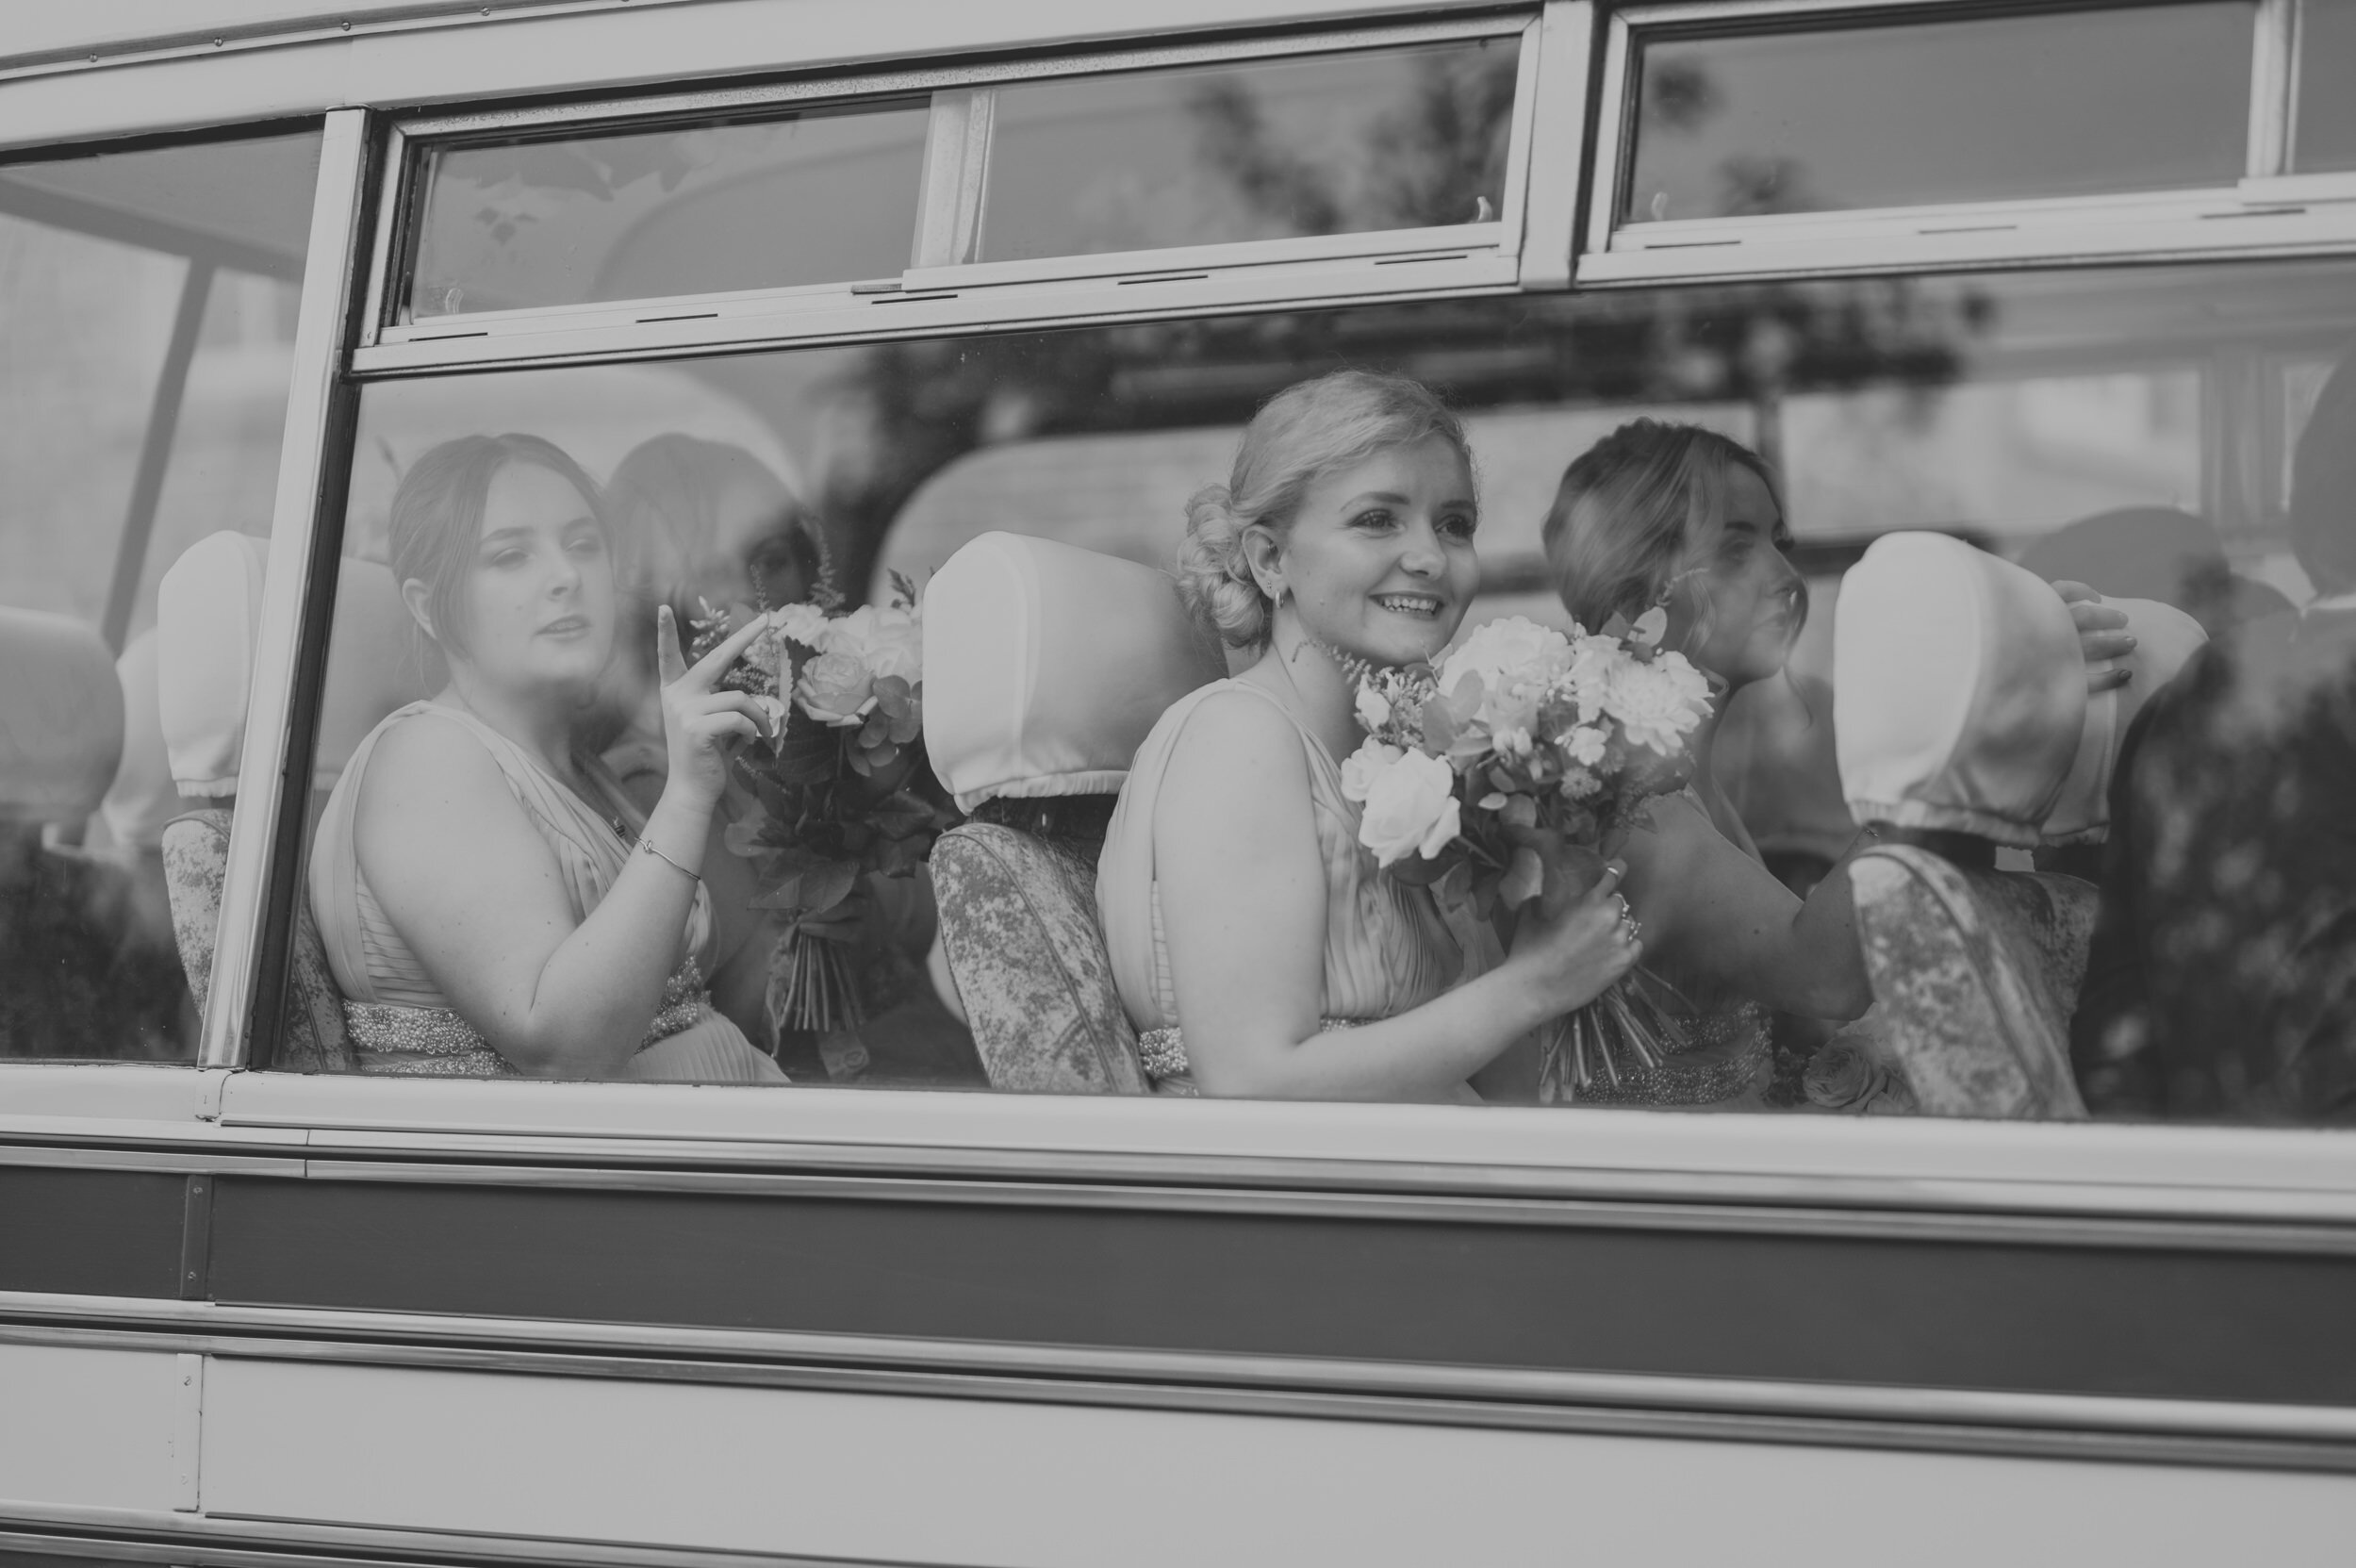 guyers-house-wedding-photography-corsham-wiltshire-6.jpg